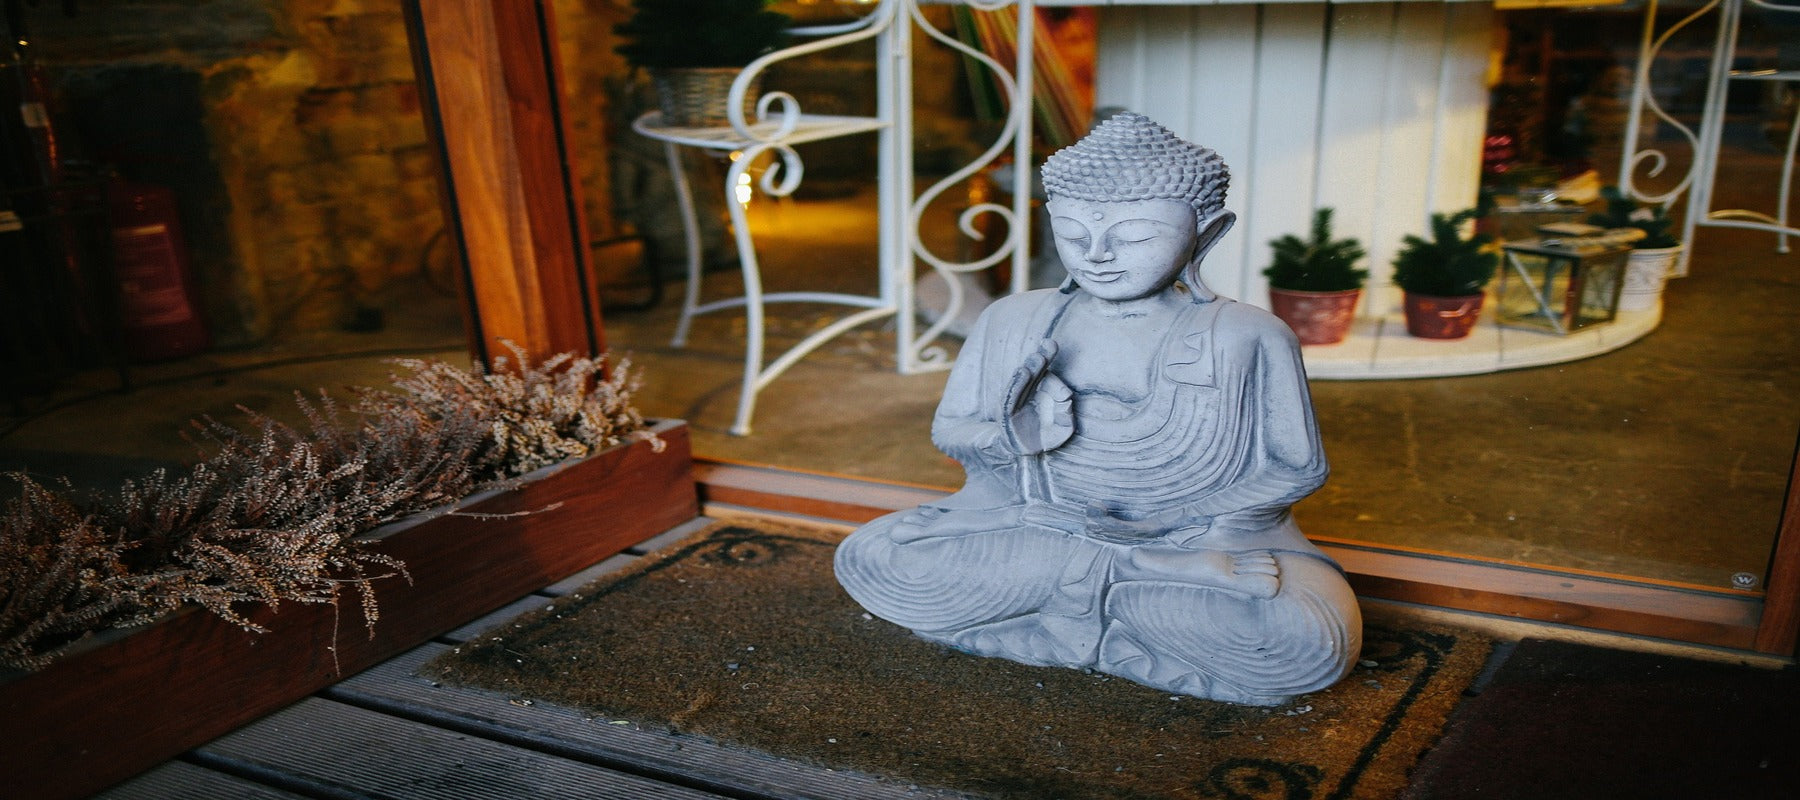 Statue de bouddha rieur avec rubans de marée porte-bonheur porte d